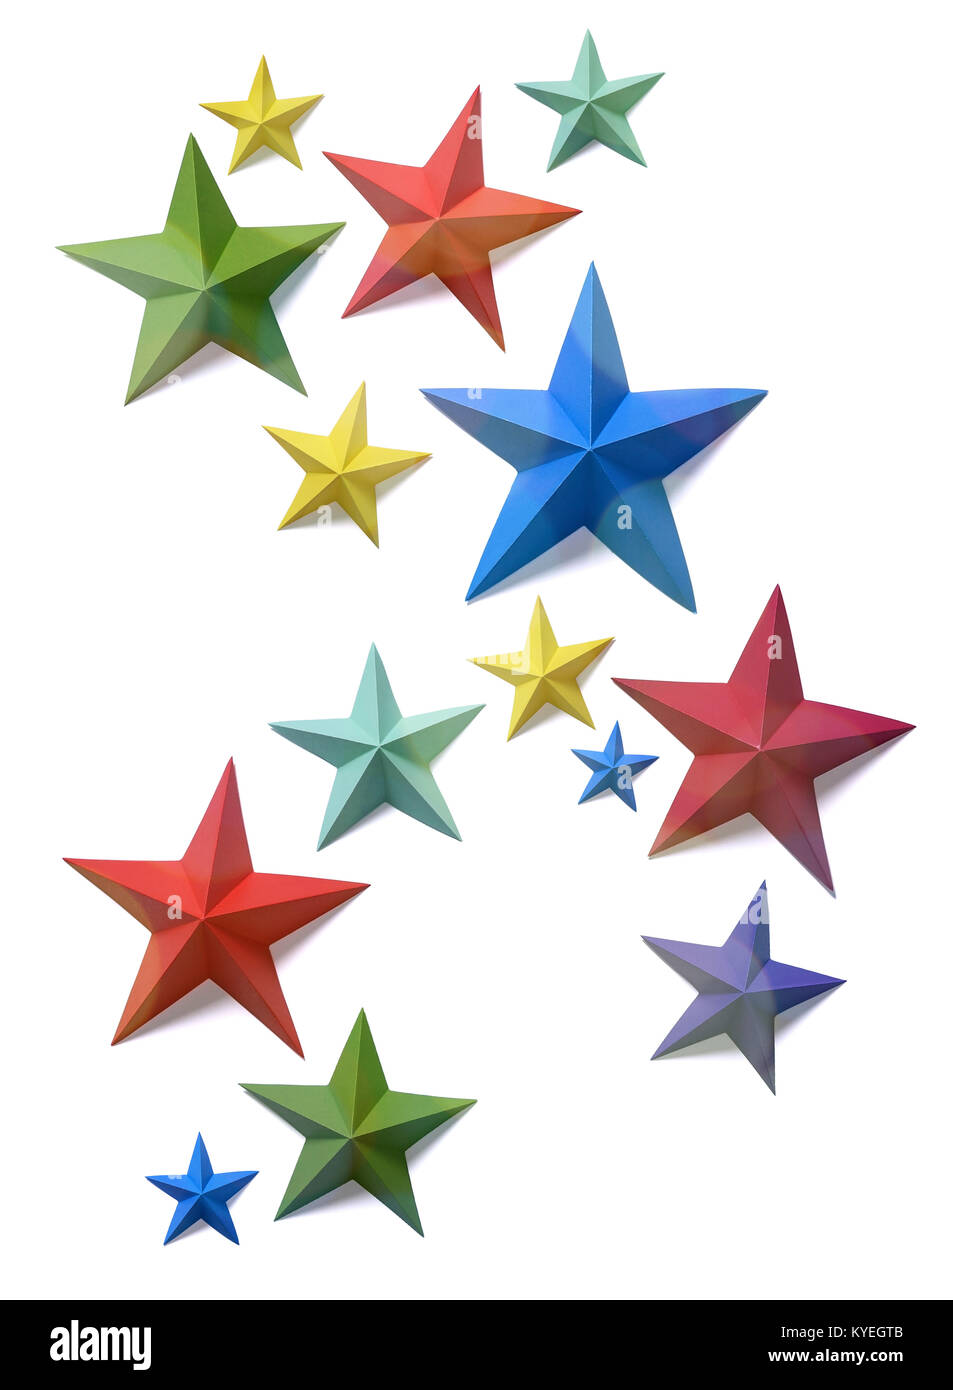 Star Papier Formen in einem Muster auf weißem Hintergrund angeordnet Stockfoto